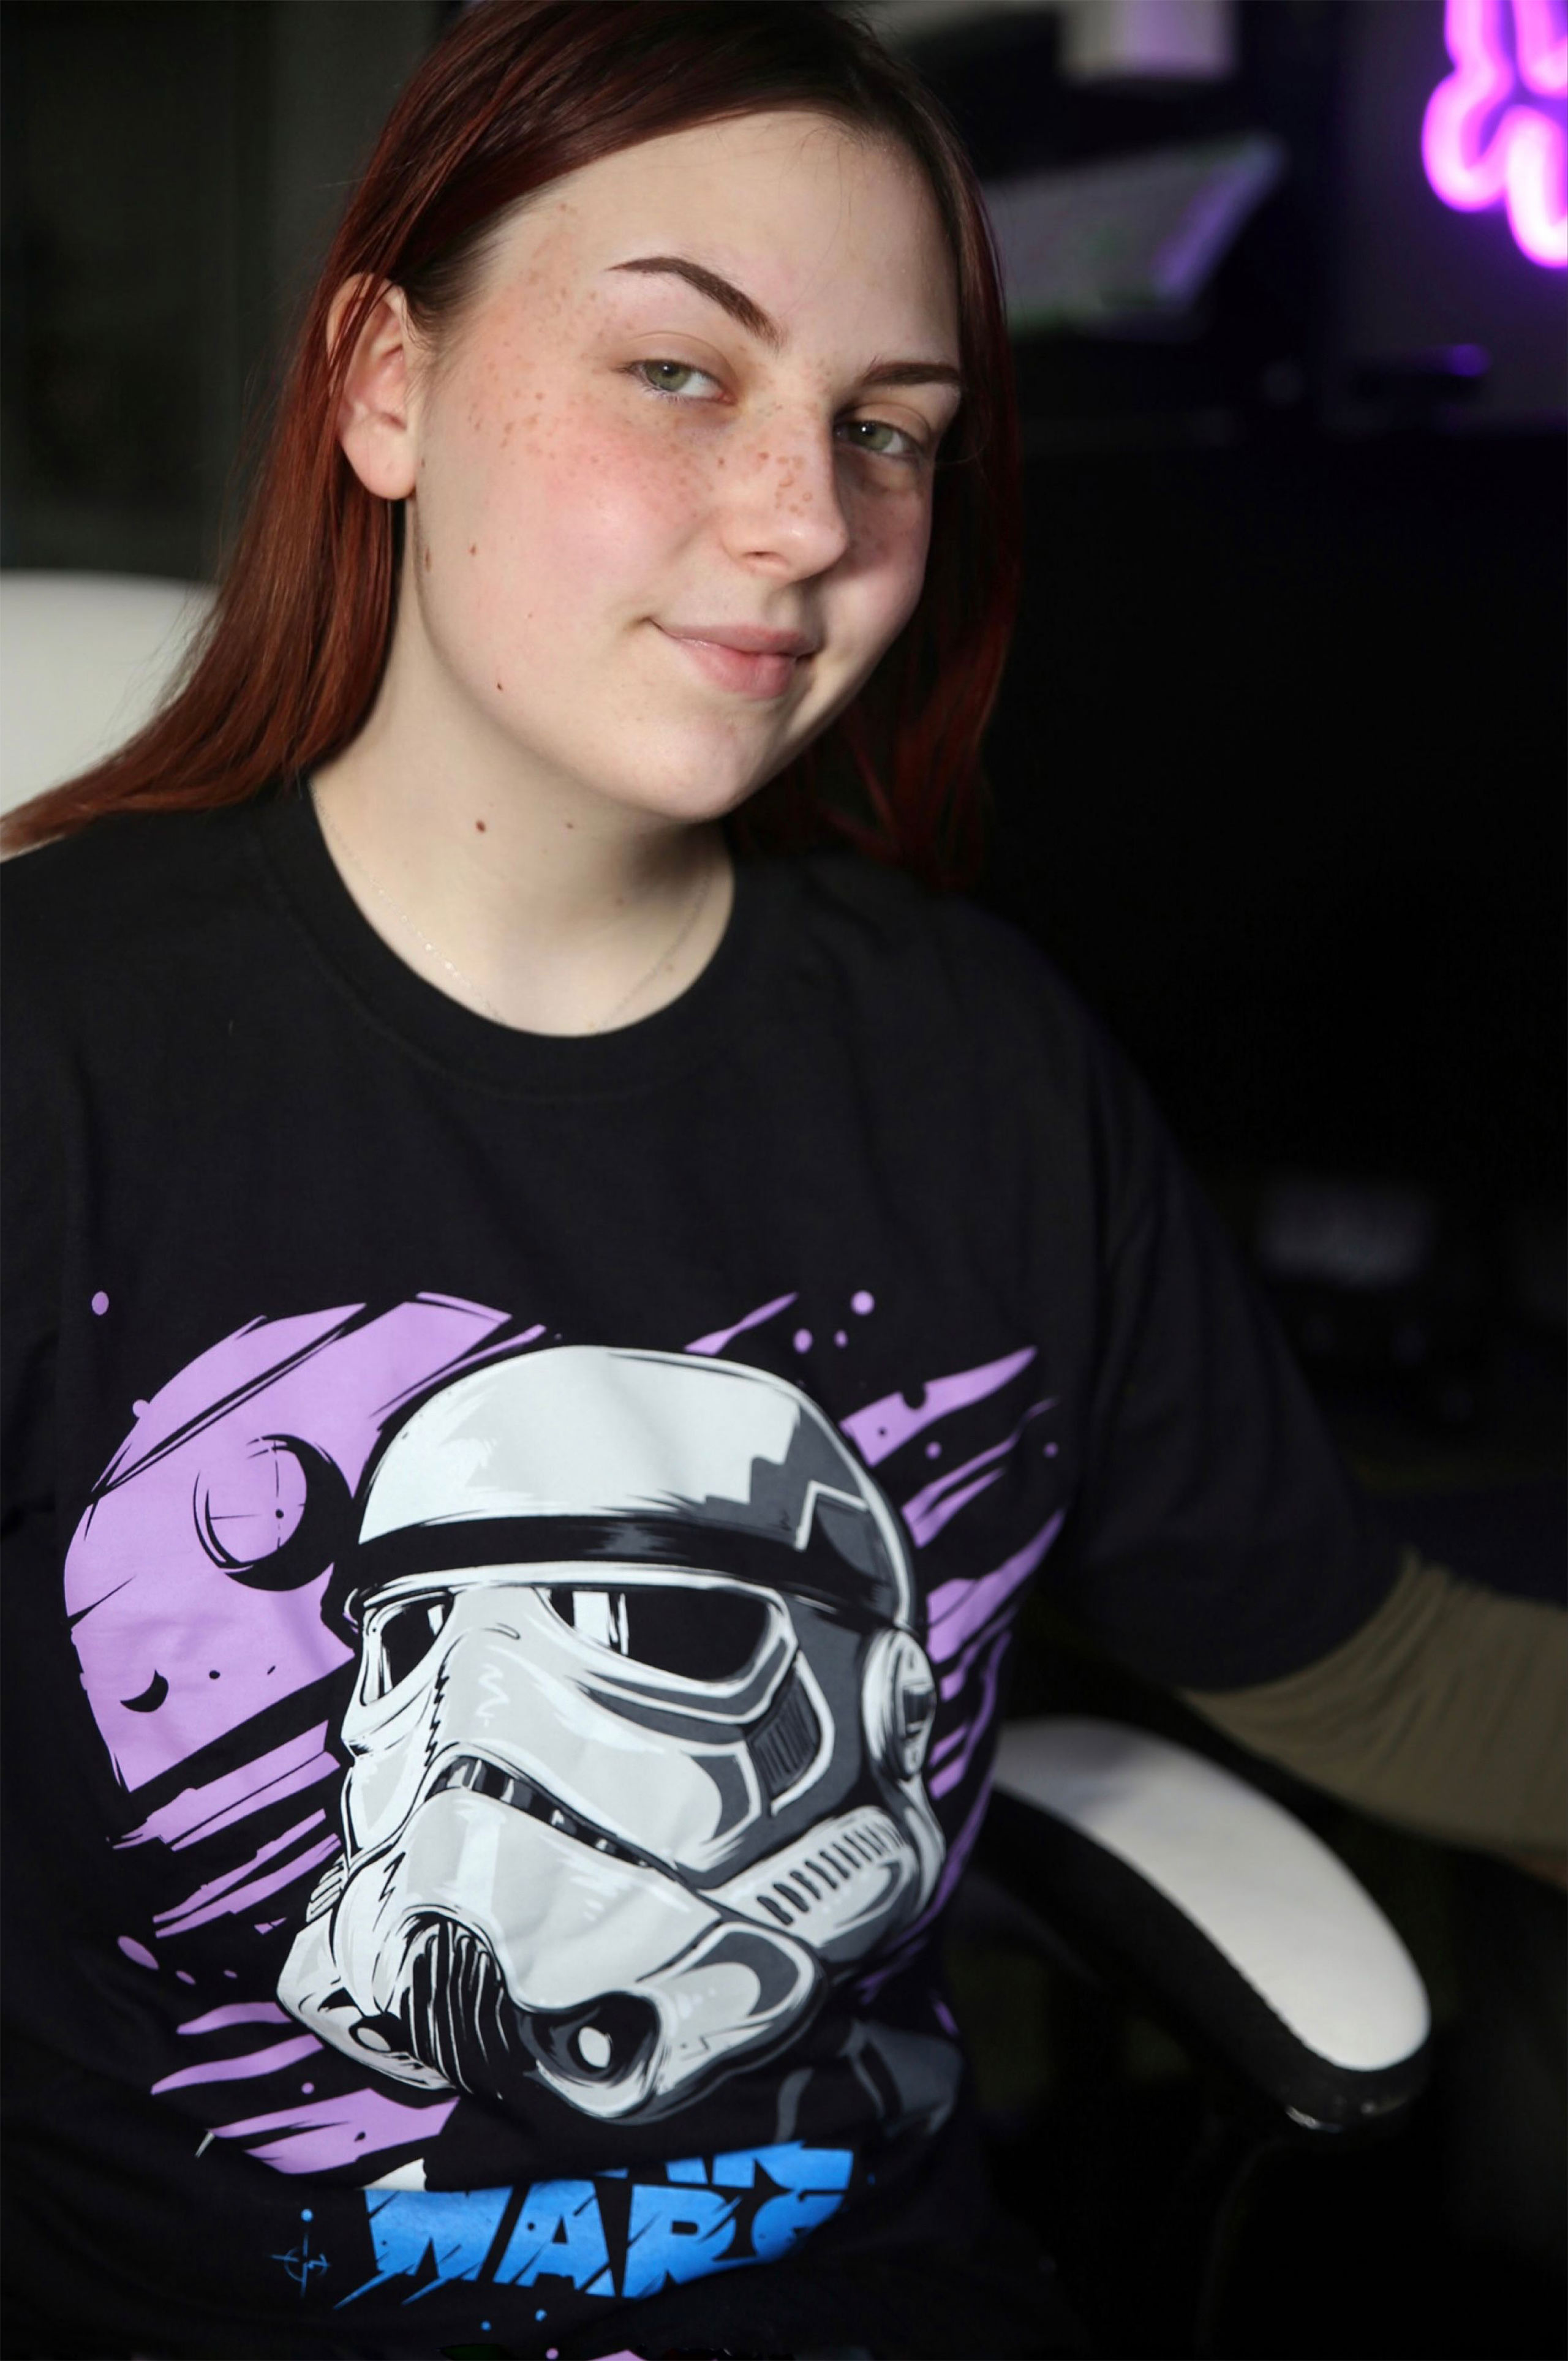 Star Wars - Galaxy Stormtrooper T-Shirt schwarz